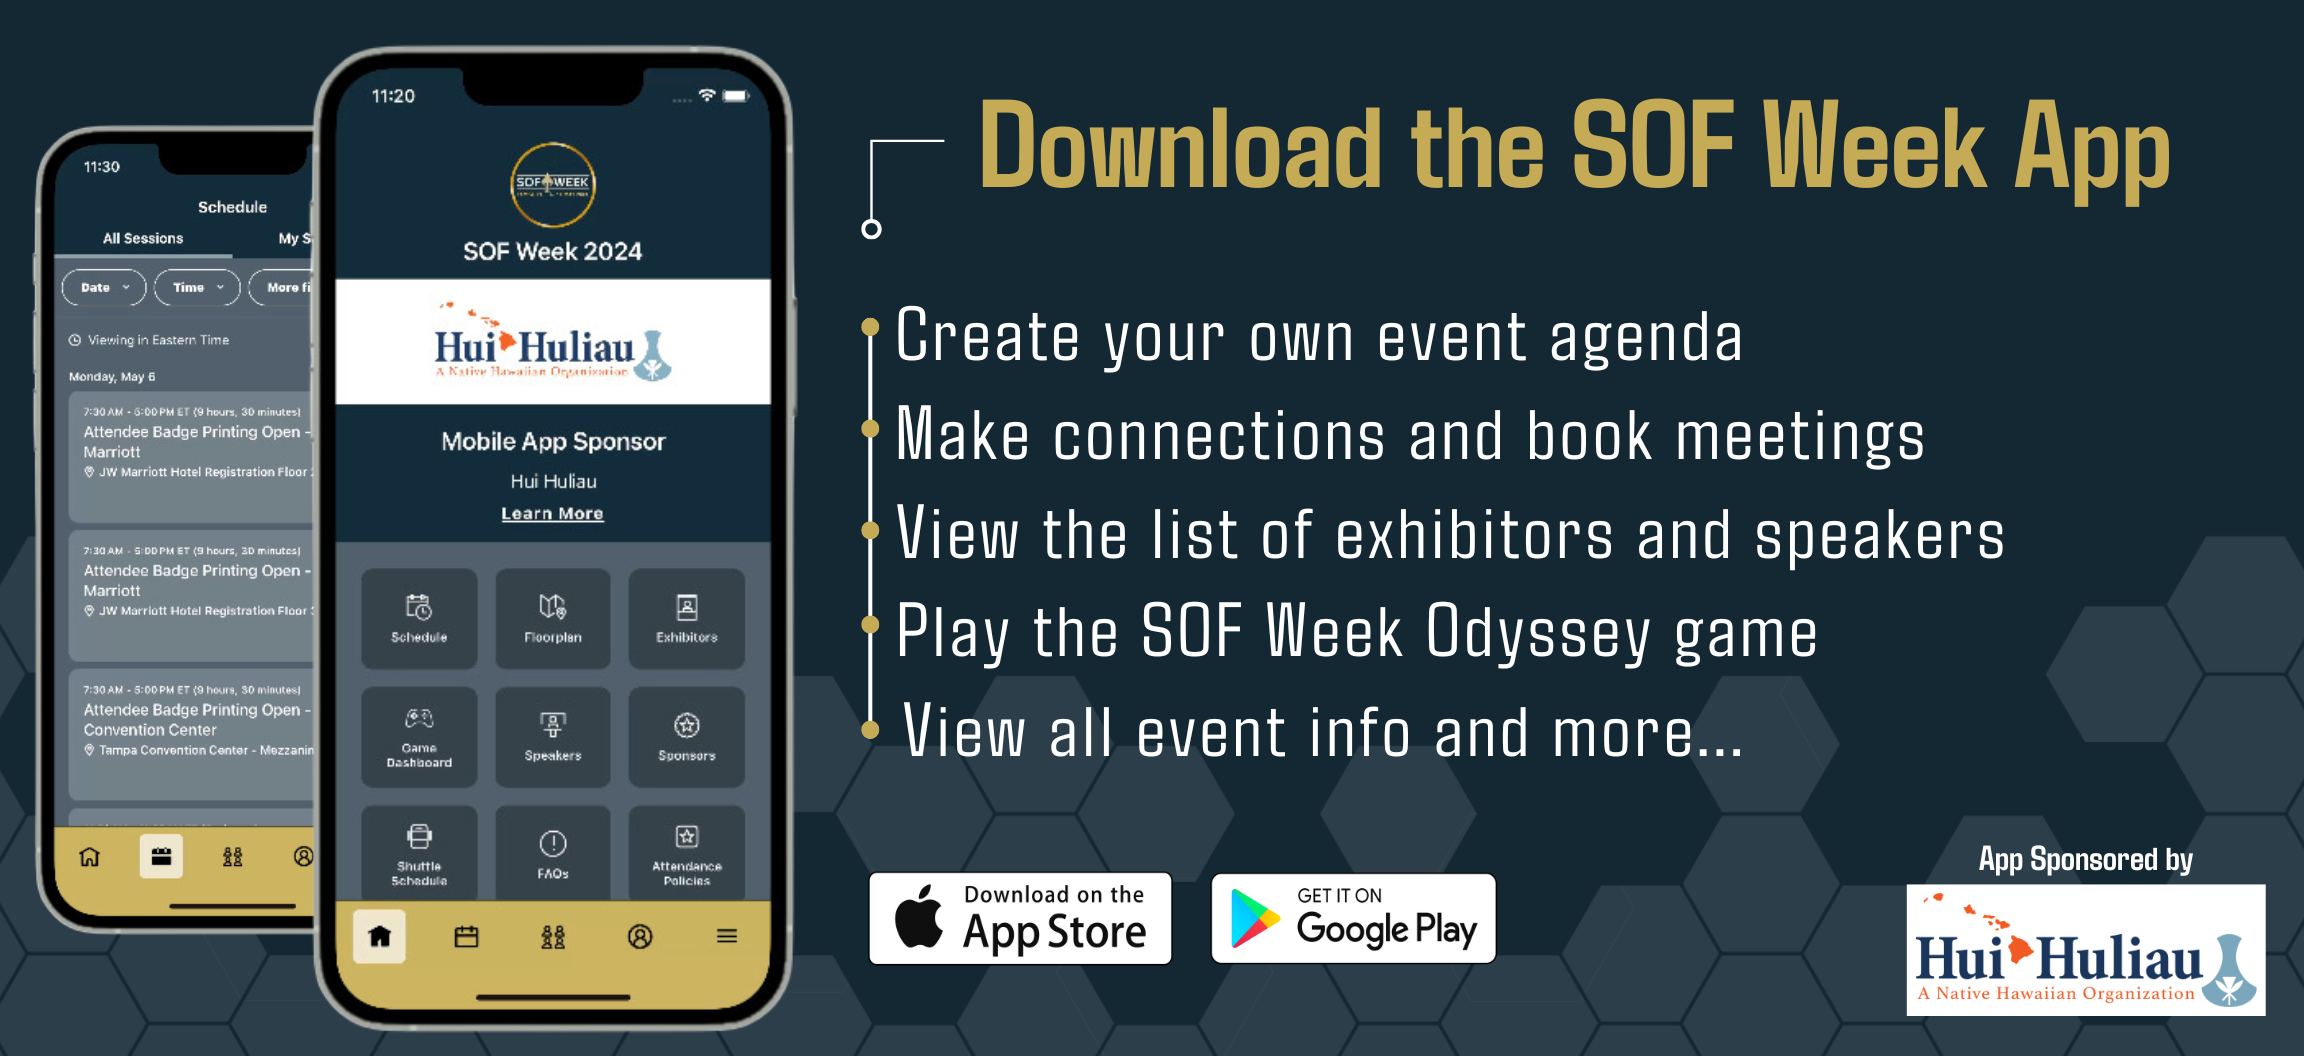 SOF Week app image